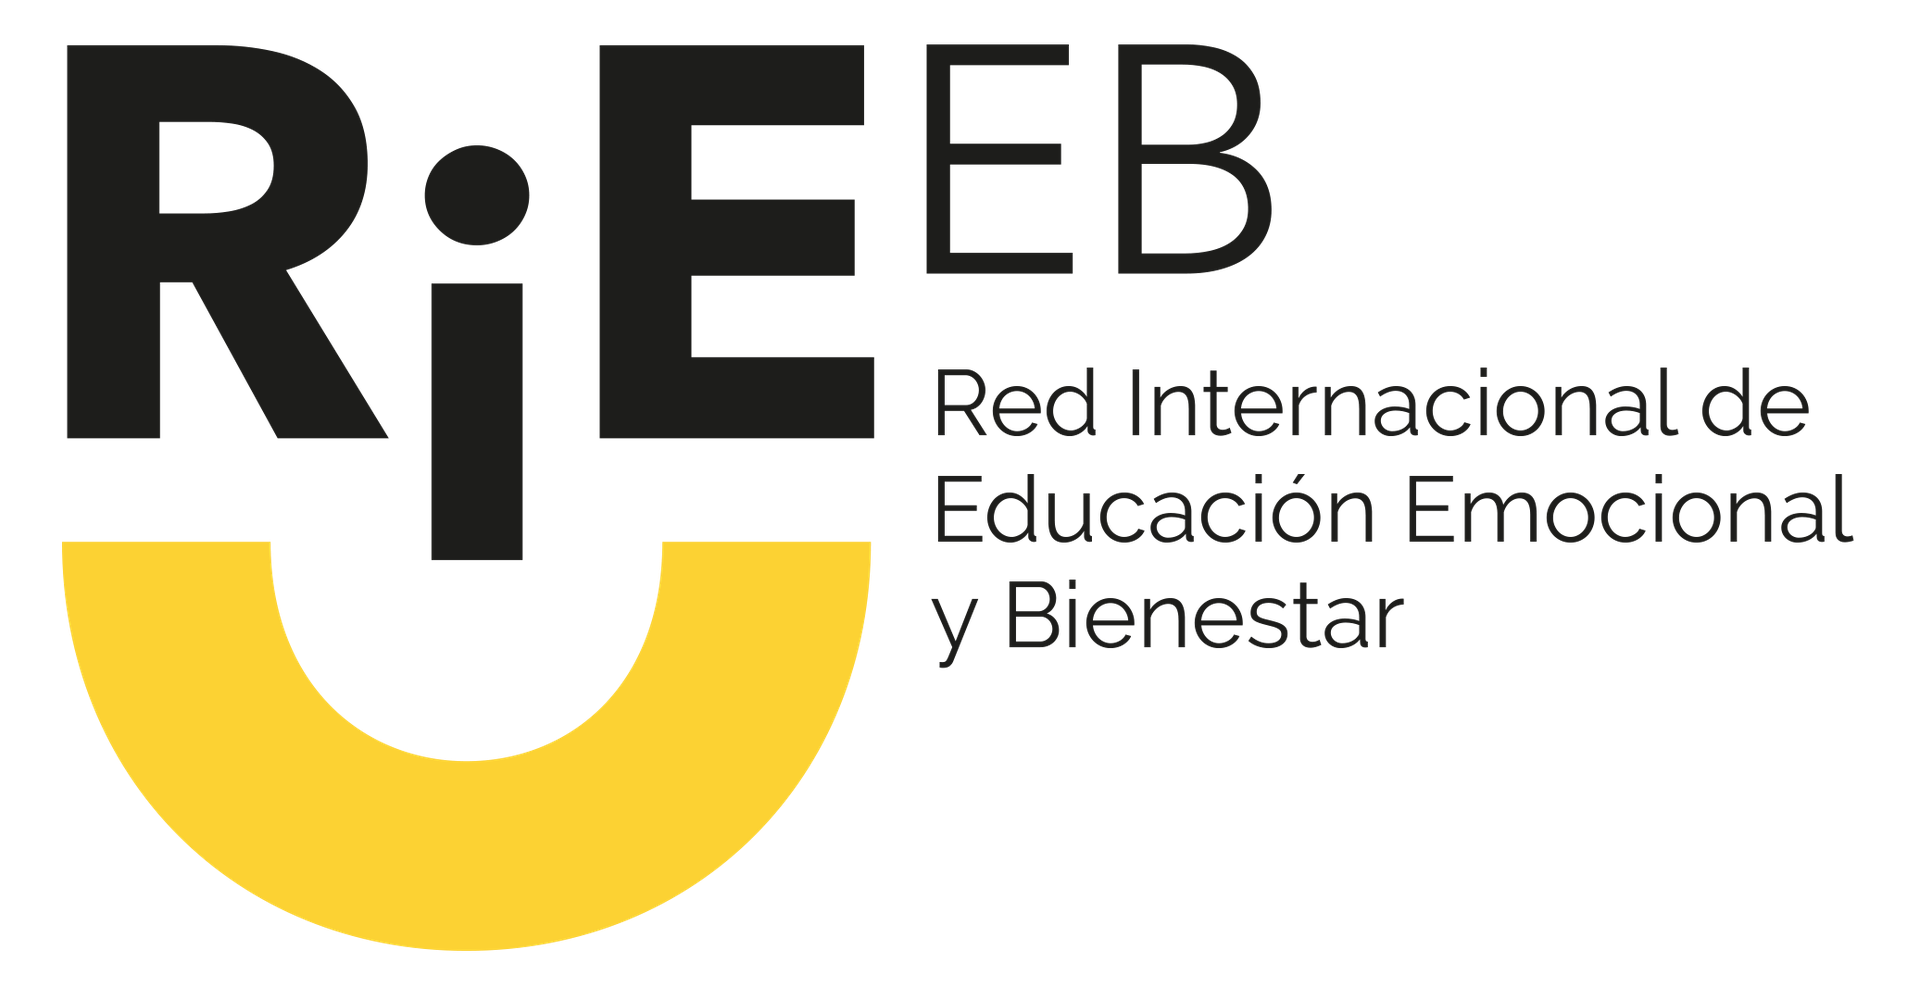 RIEEB (Red internacional de Educacion emocional y bienestar)